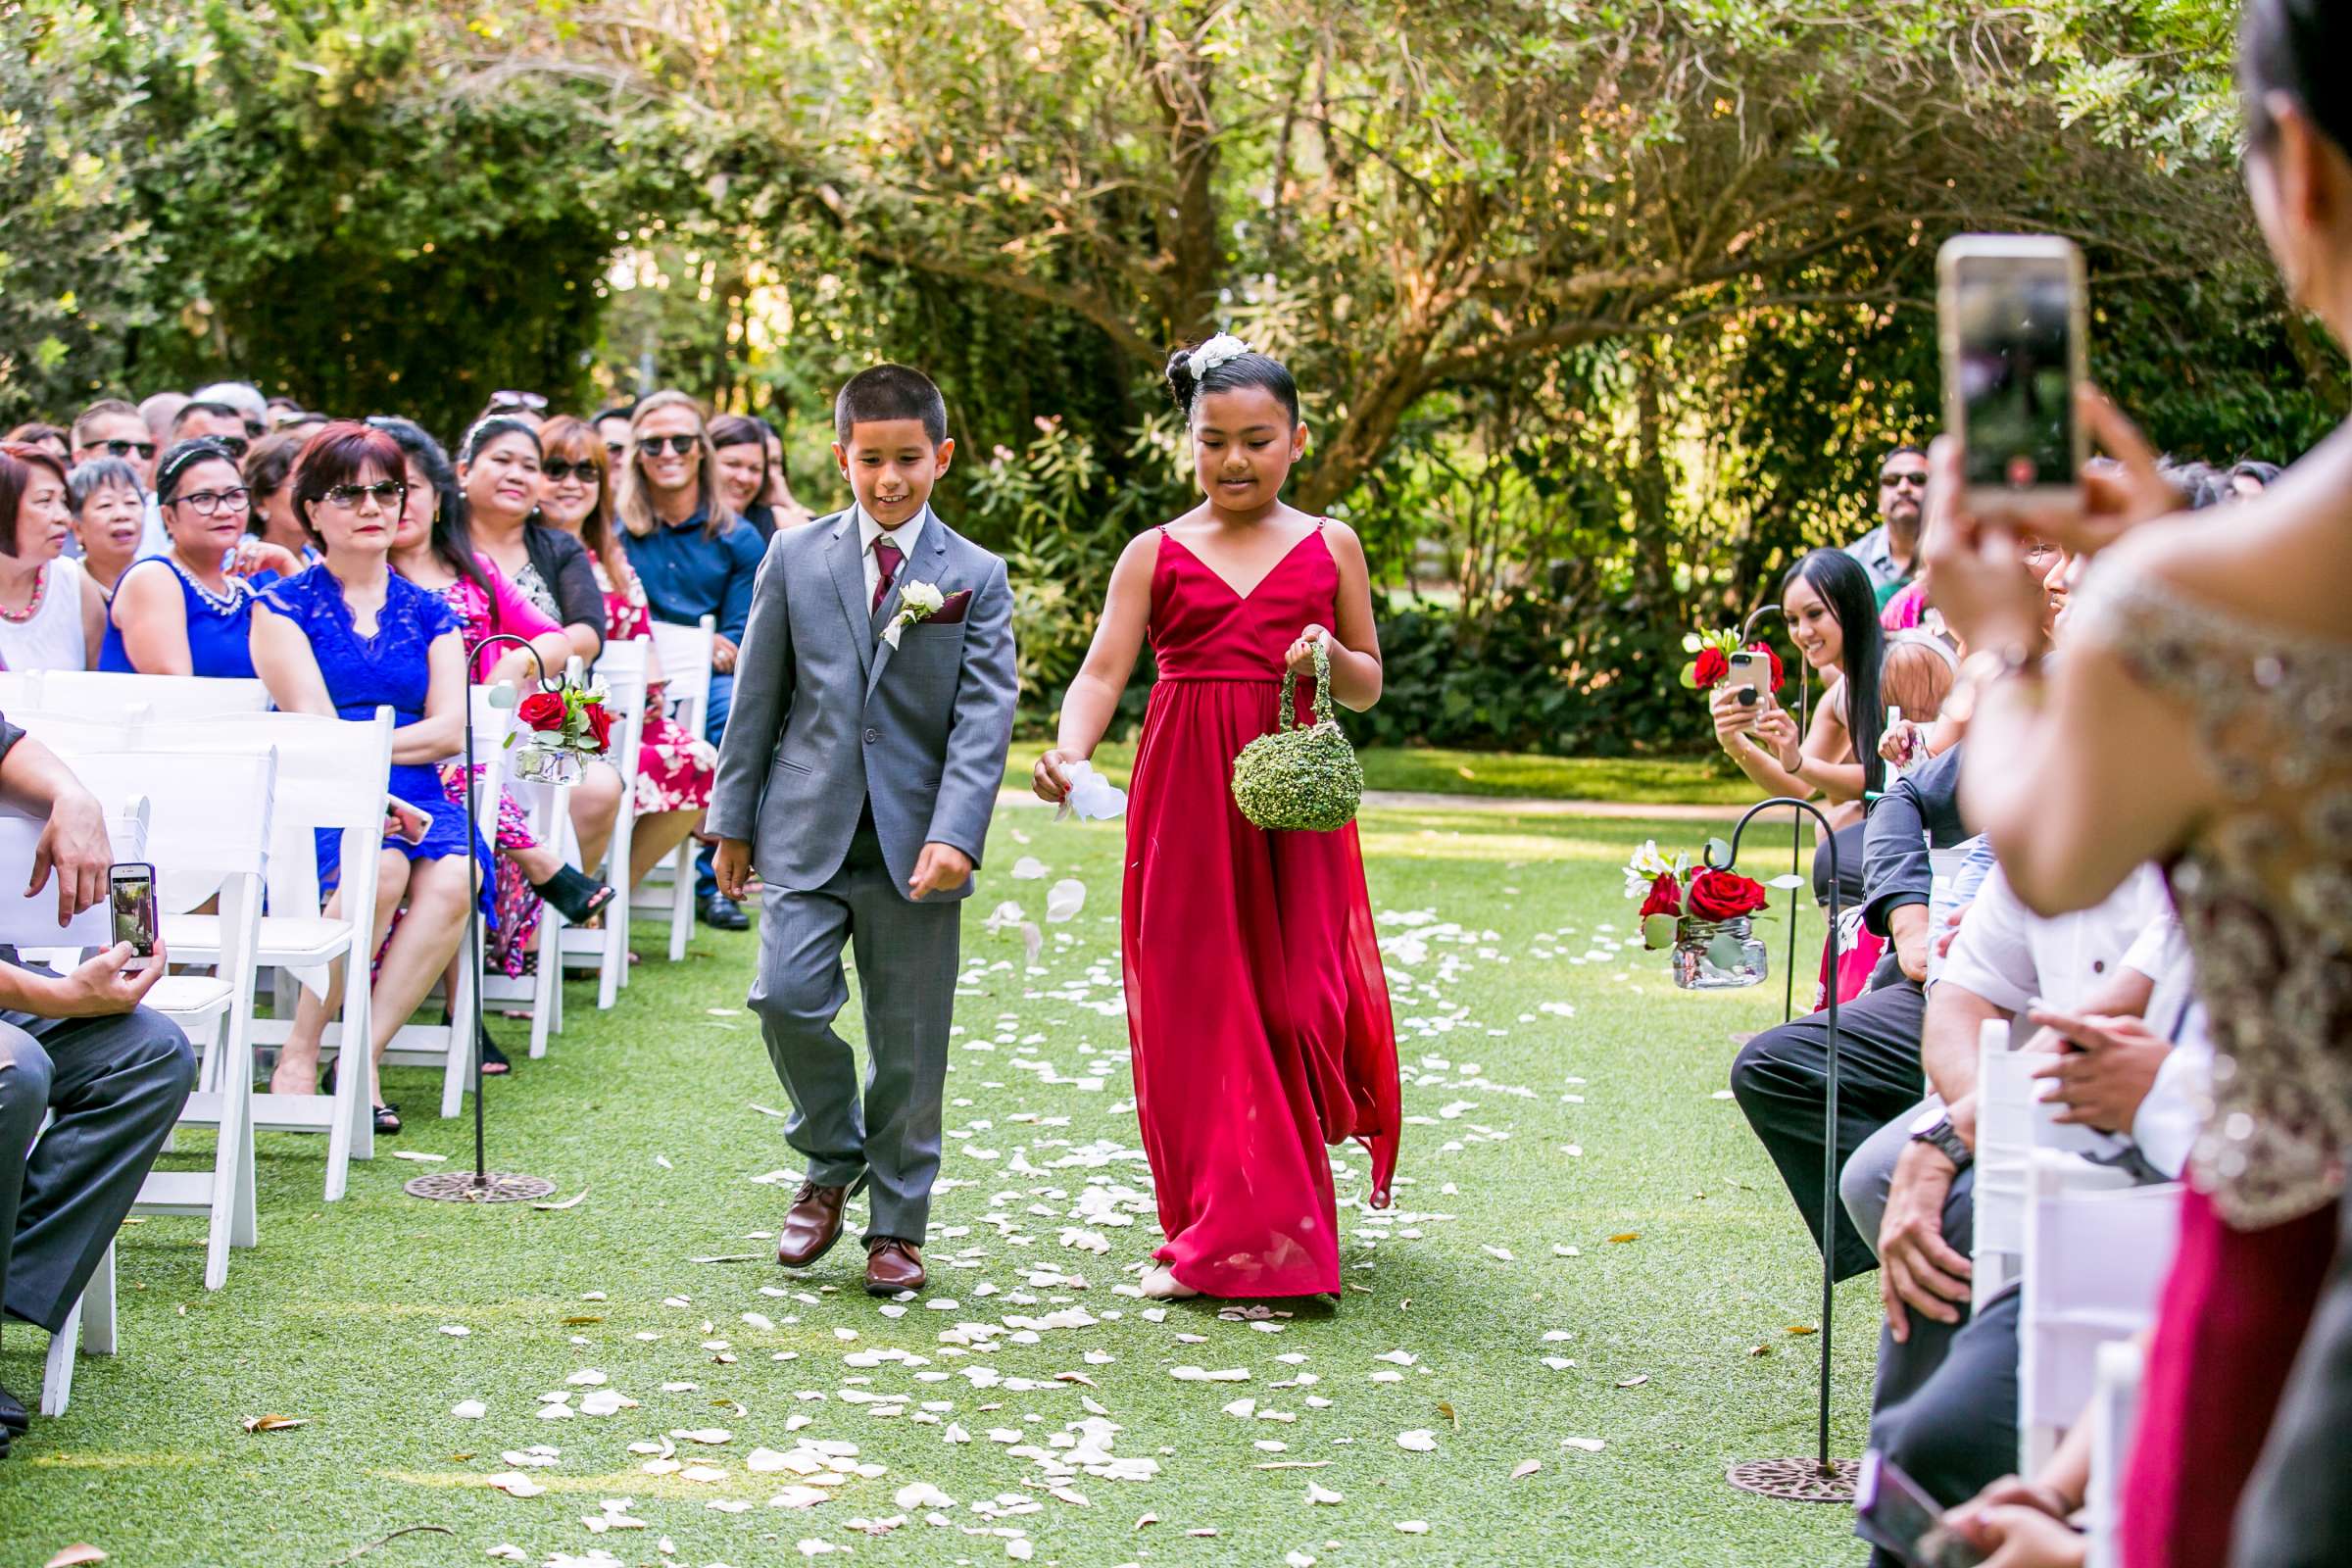 Twin Oaks House & Gardens Wedding Estate Wedding, Merrilynn and Trey Wedding Photo #72 by True Photography